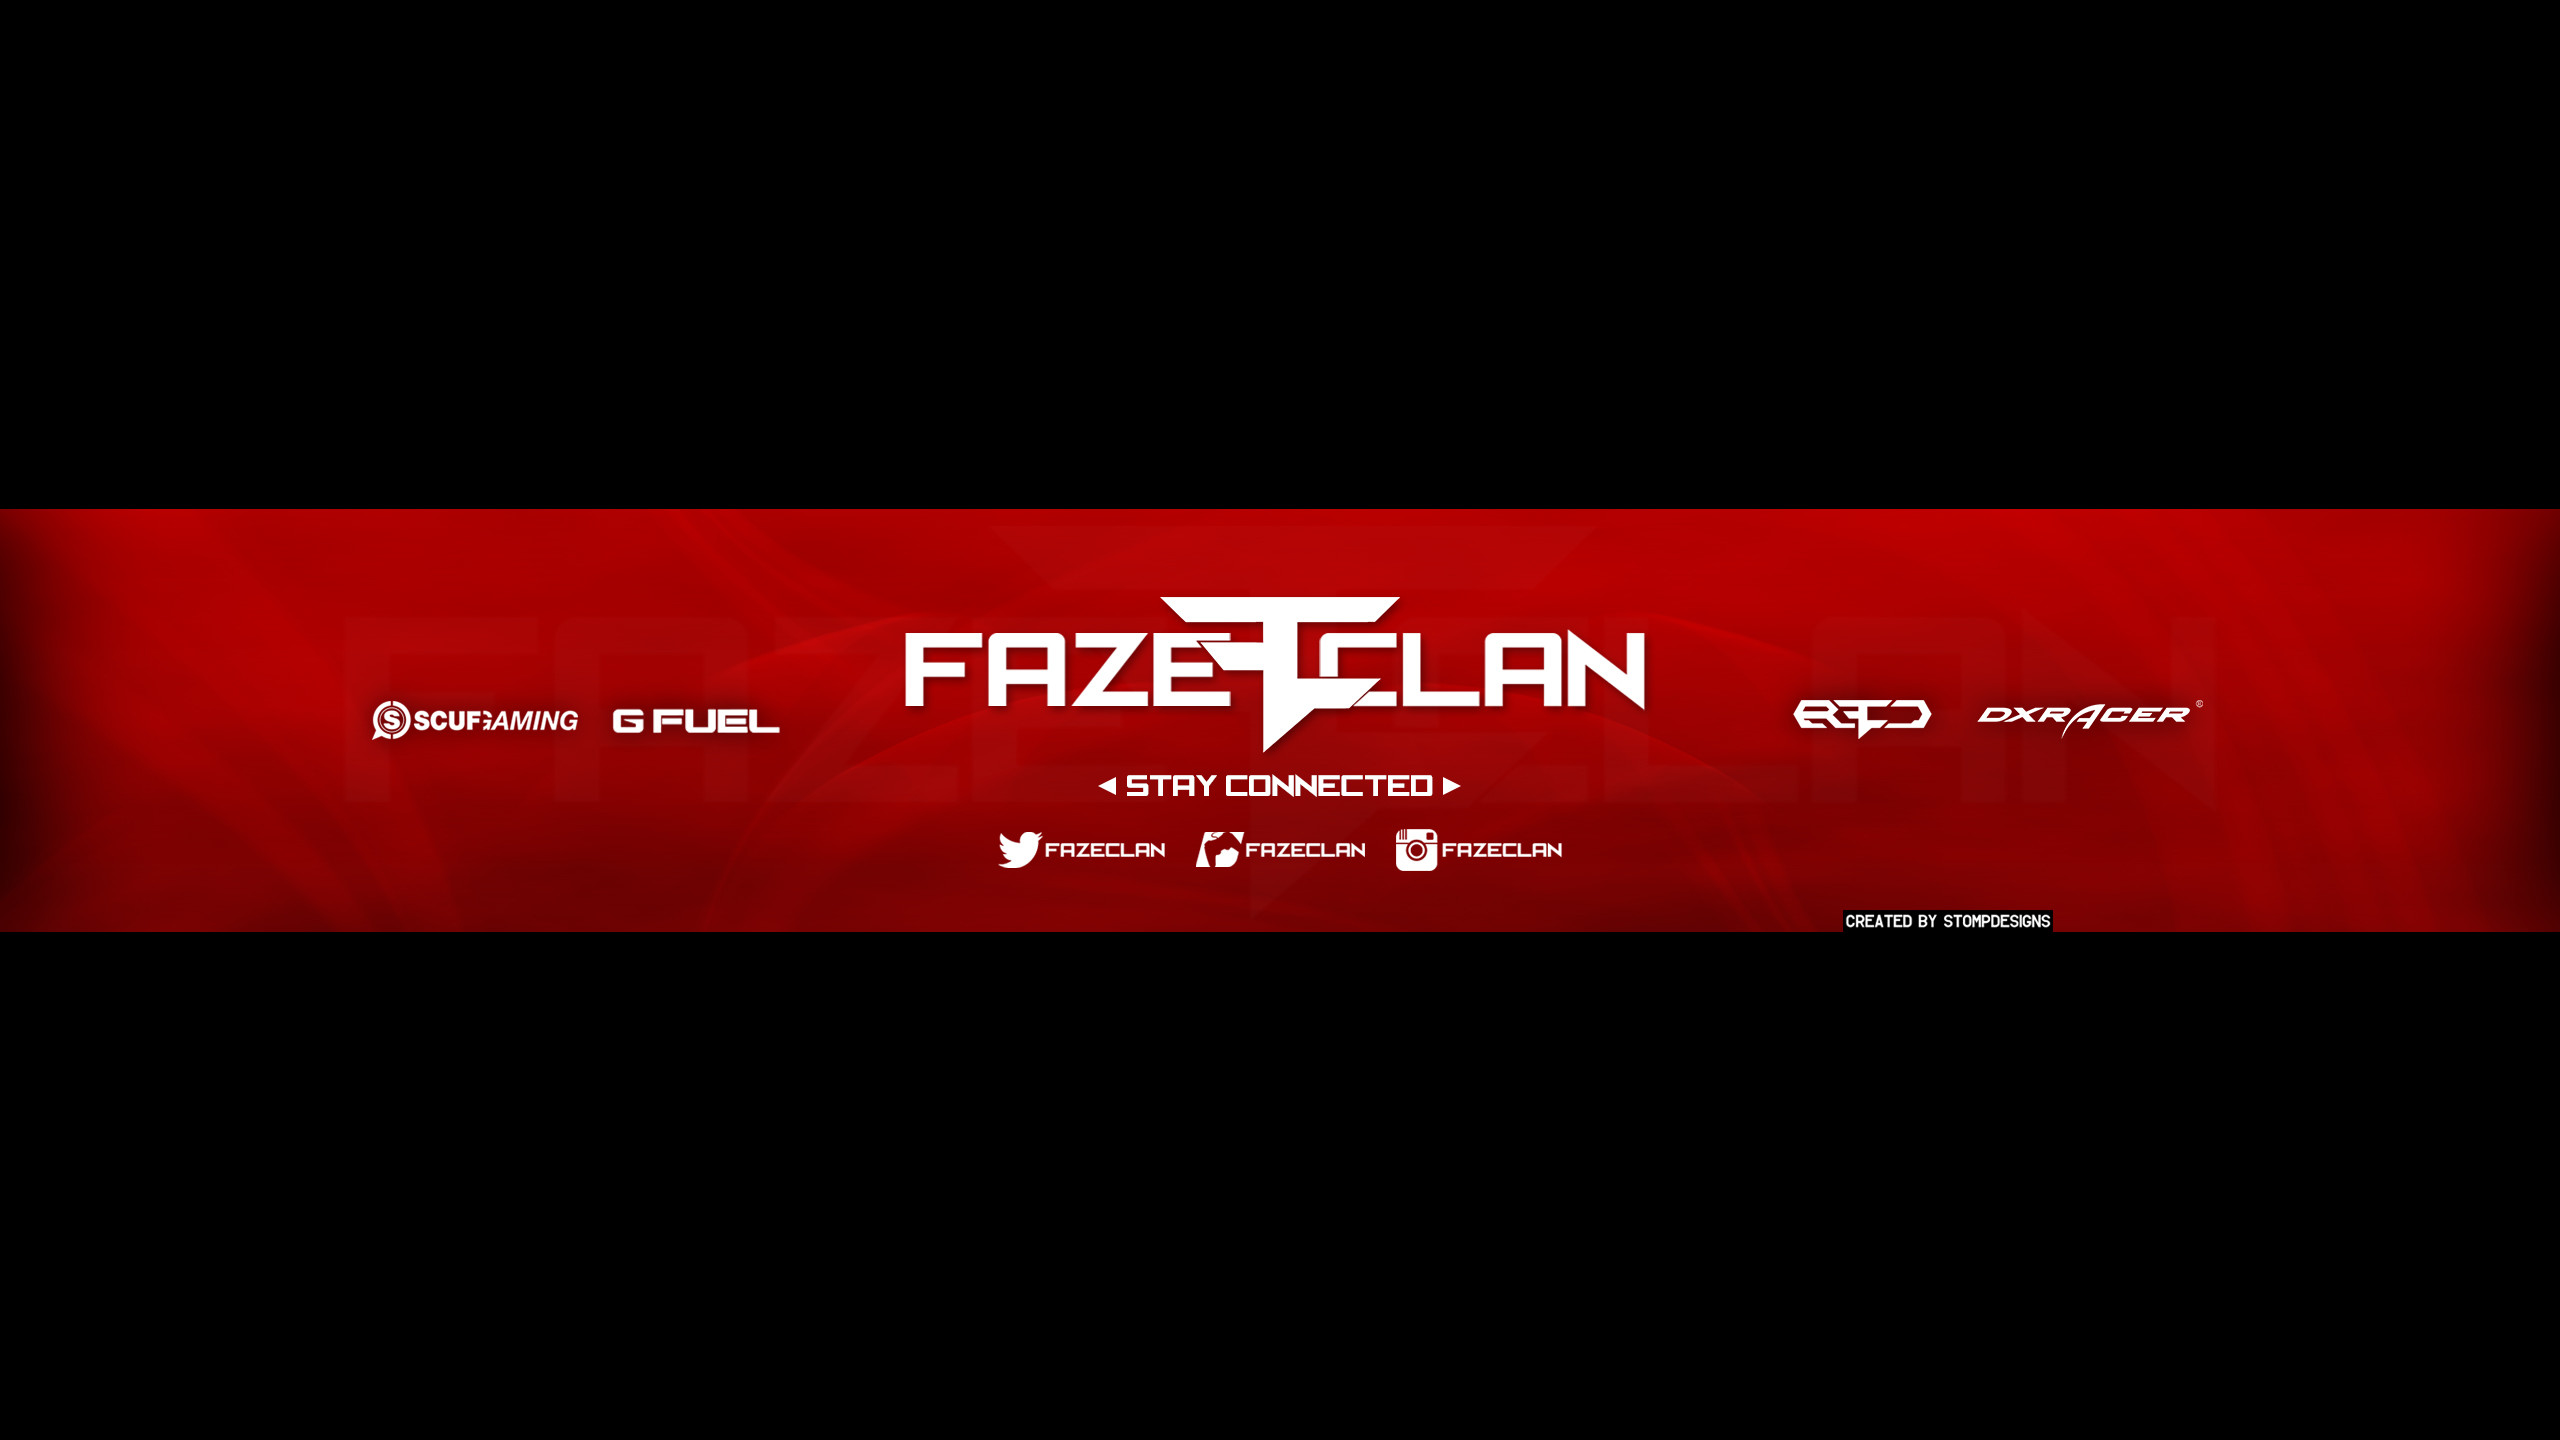 2560x1440 FaZe Clan Banner by RealStompDesigns FaZe Clan Banner by RealStompDesigns